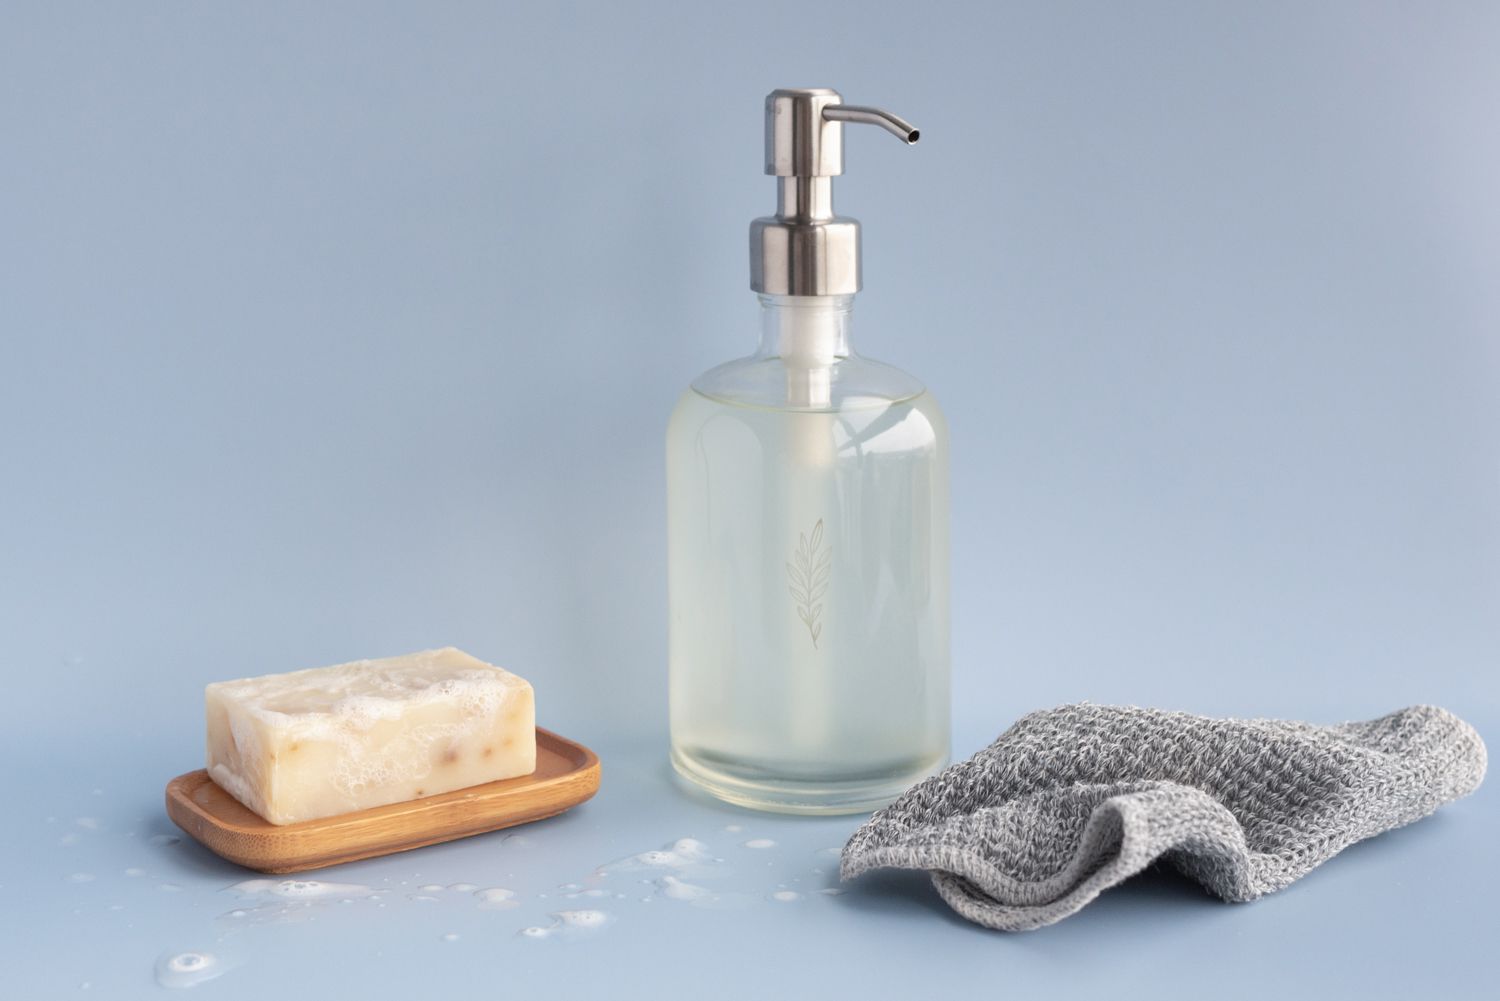 pastilla de jabón en crema en un soporte junto a un recipiente de cristal reutilizable de jabón líquido